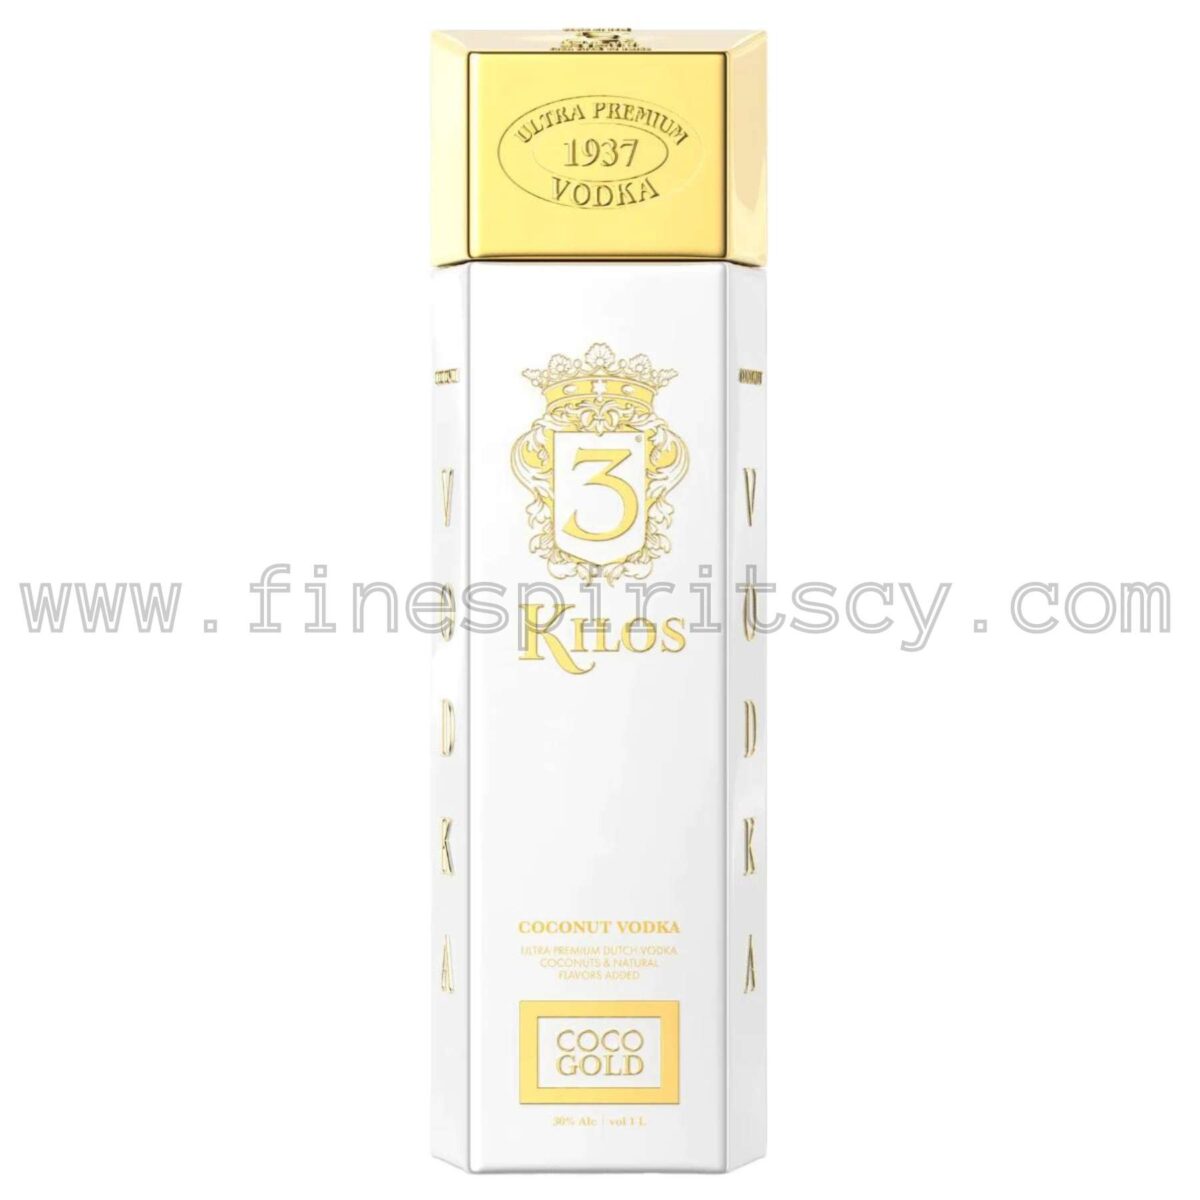 3 Kilos Gold Coconut Vodka 700ml 70cl 0.7L Cyprus Price FSCY Online Order